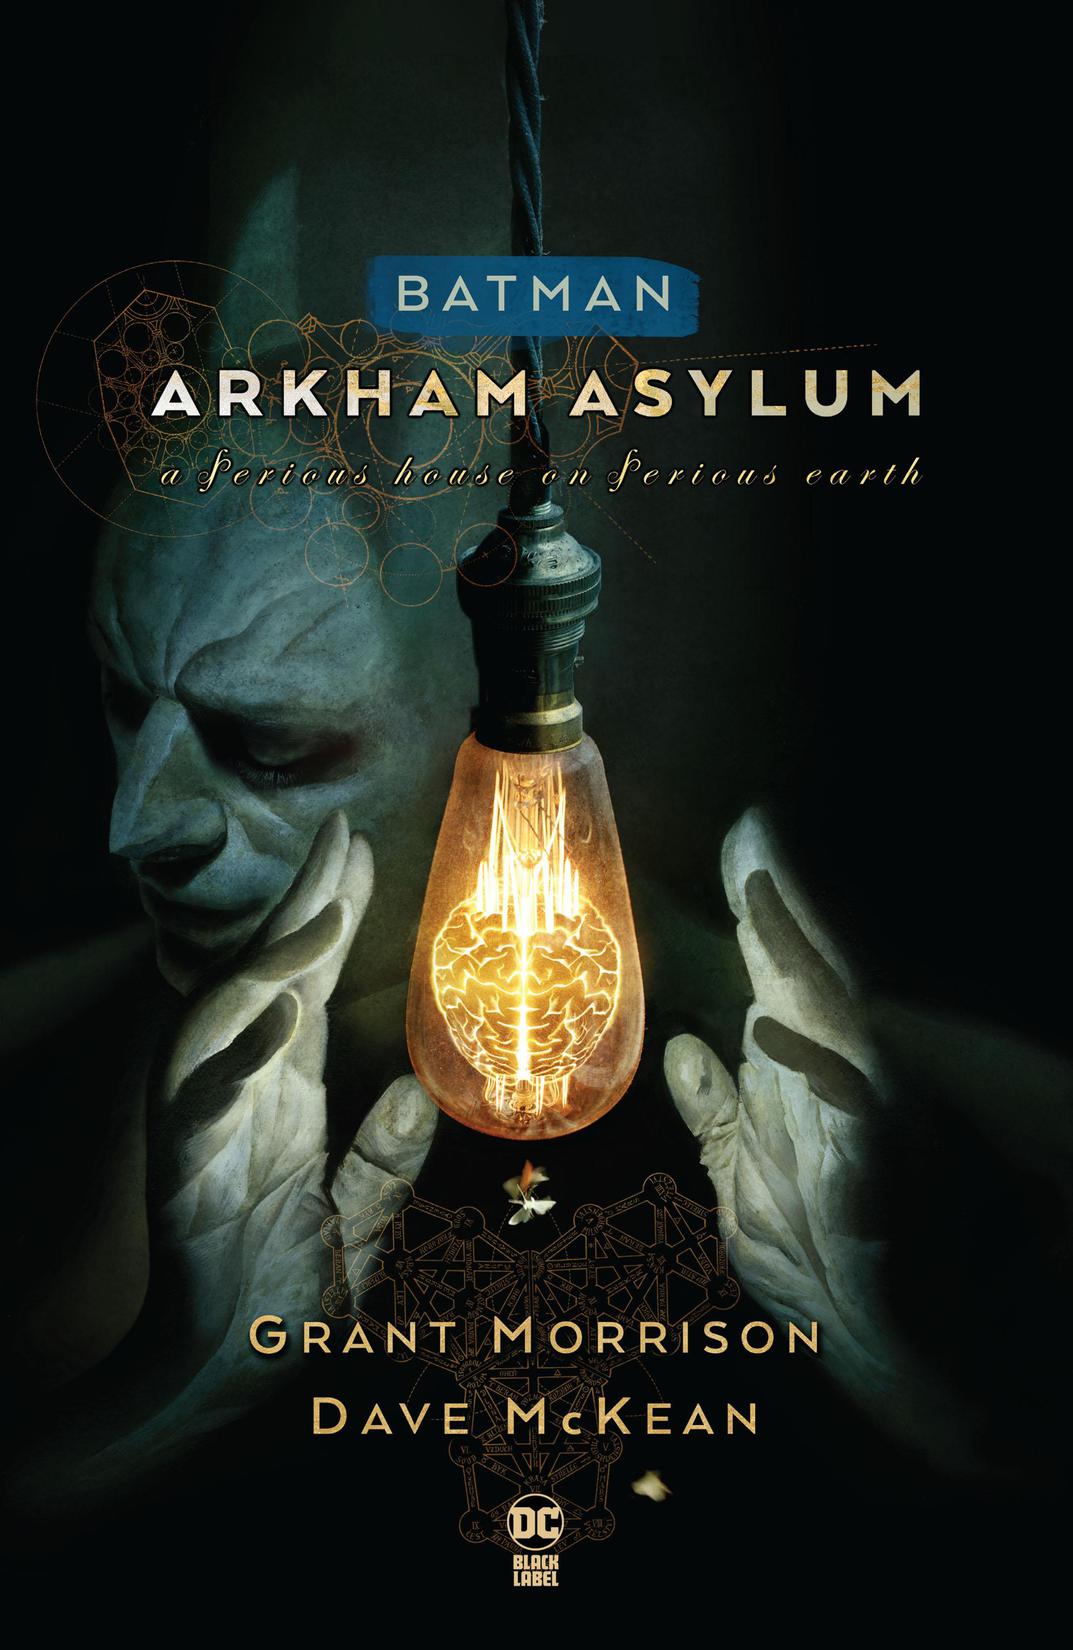 Batman: Arkham Asylum New Edition preview images